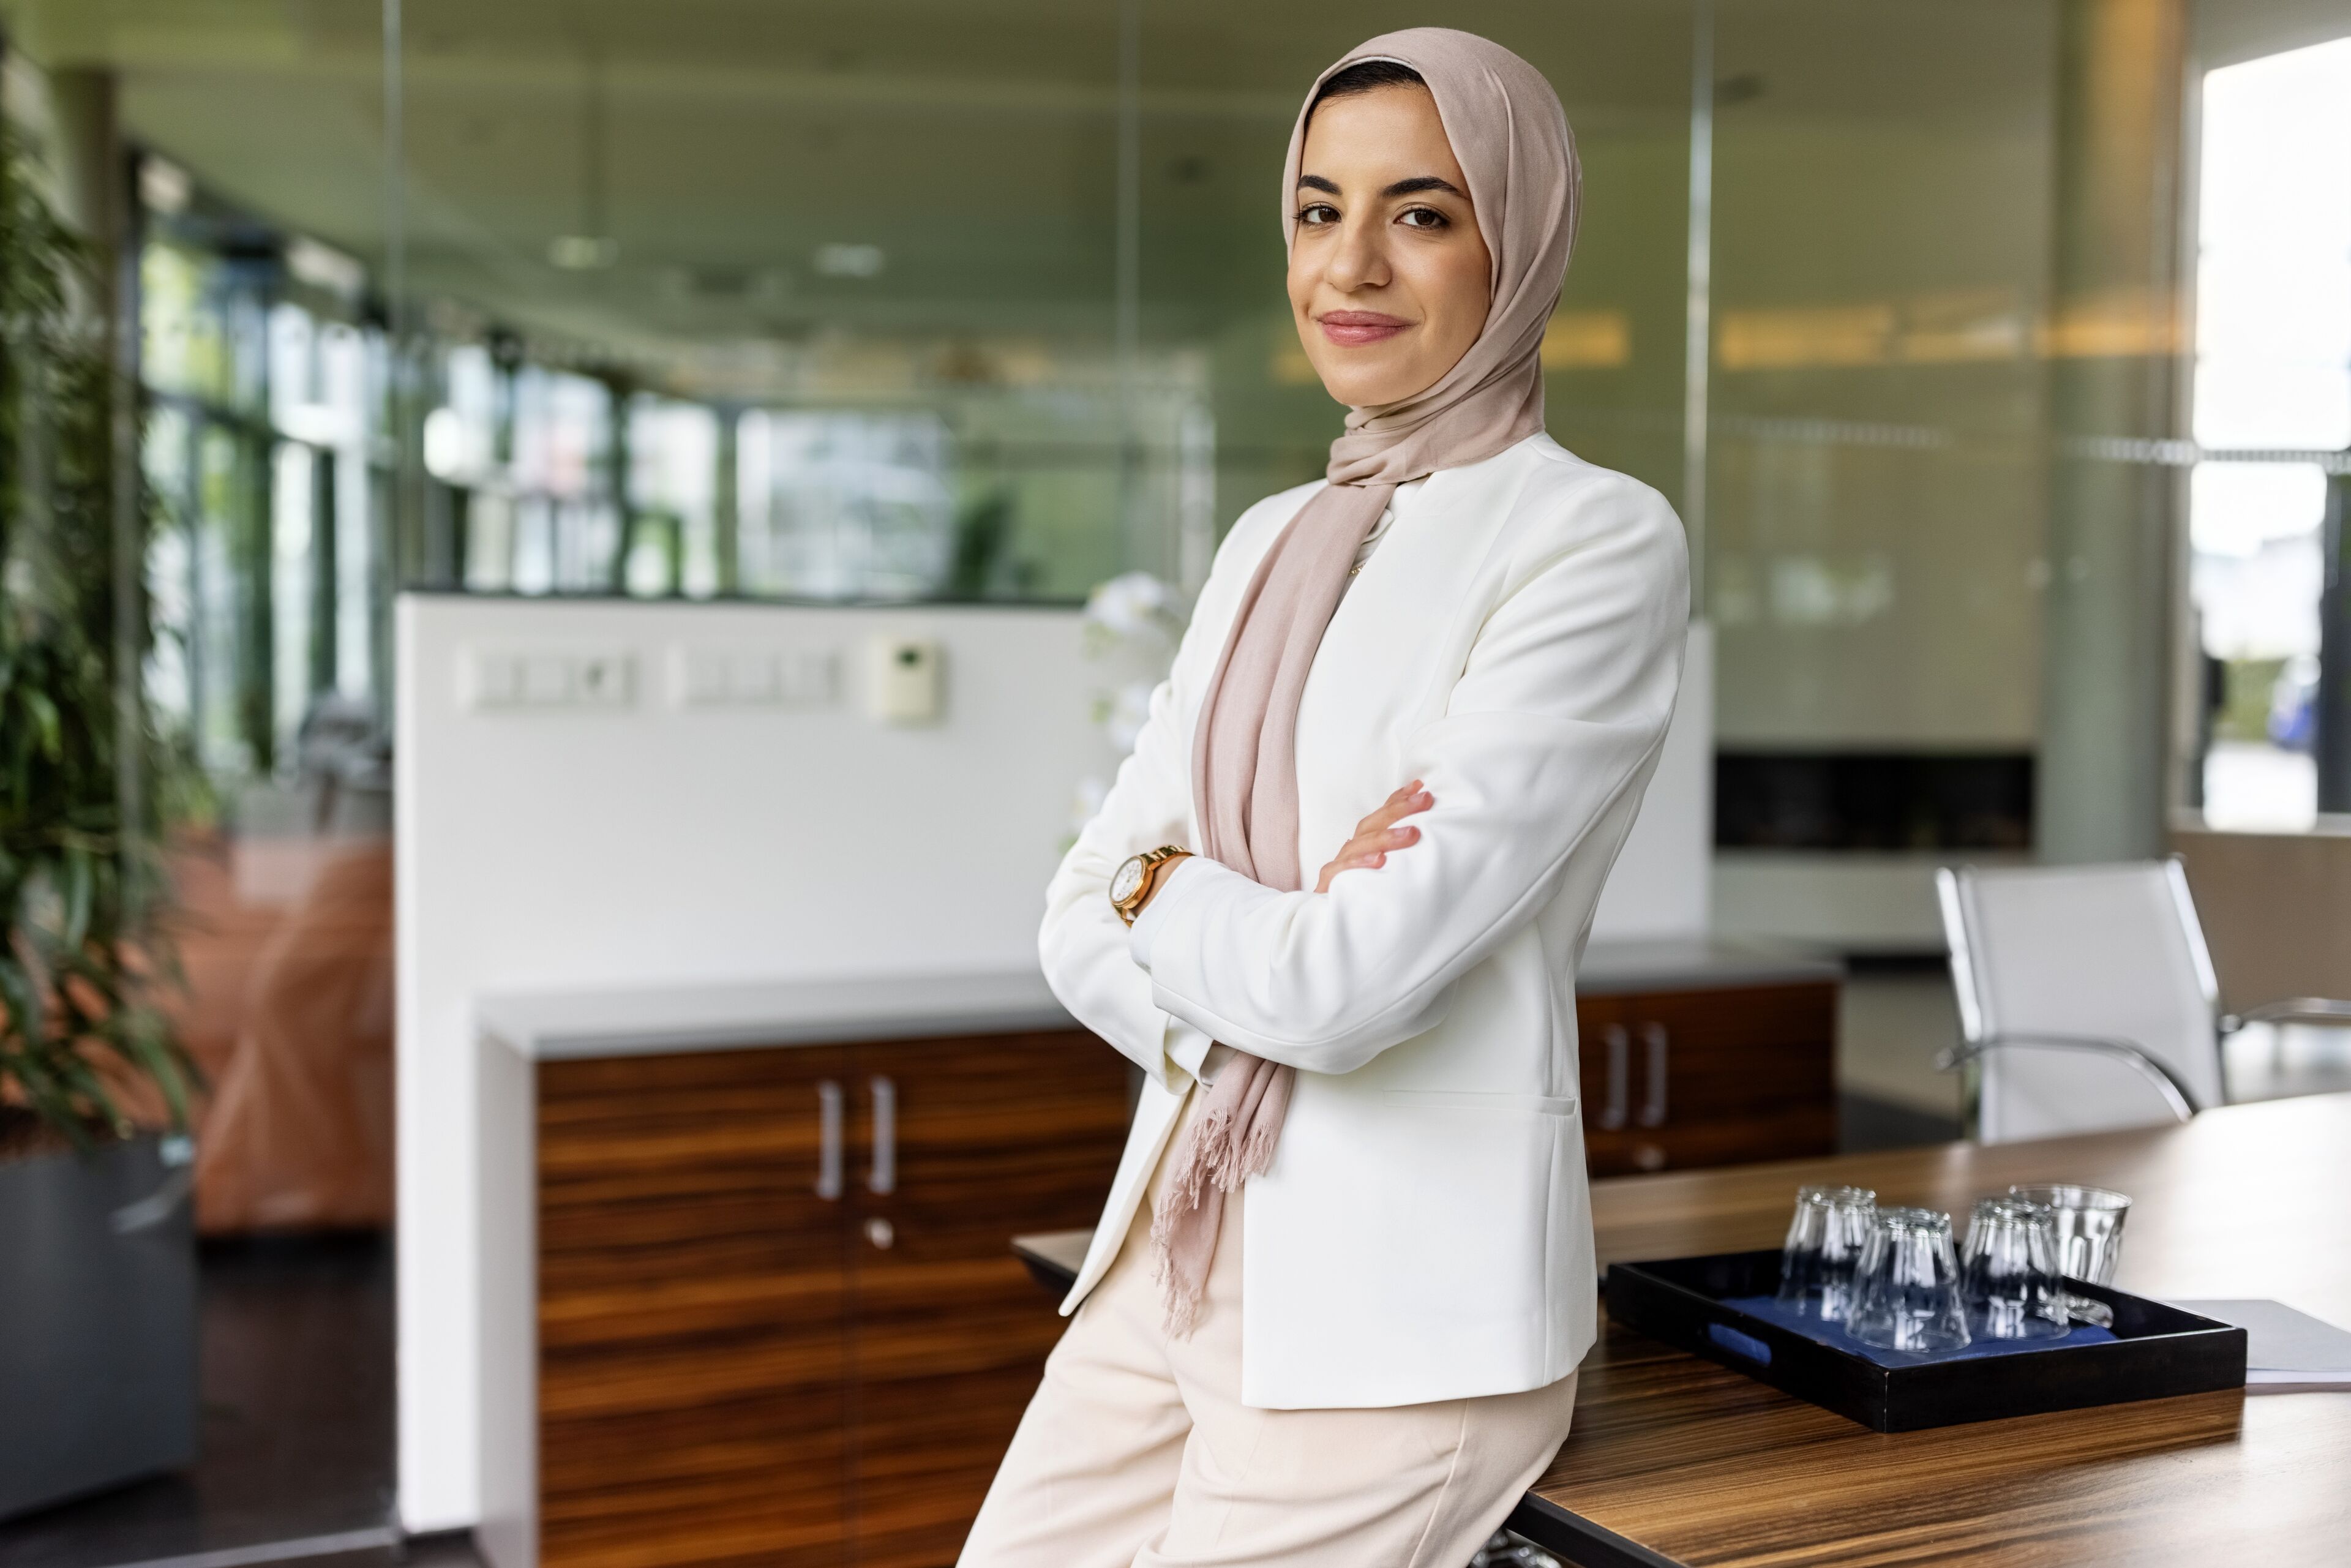 Une femme posée portant un hijab se tient les bras croisés dans un bureau moderne, dégageant confiance et professionnalisme.